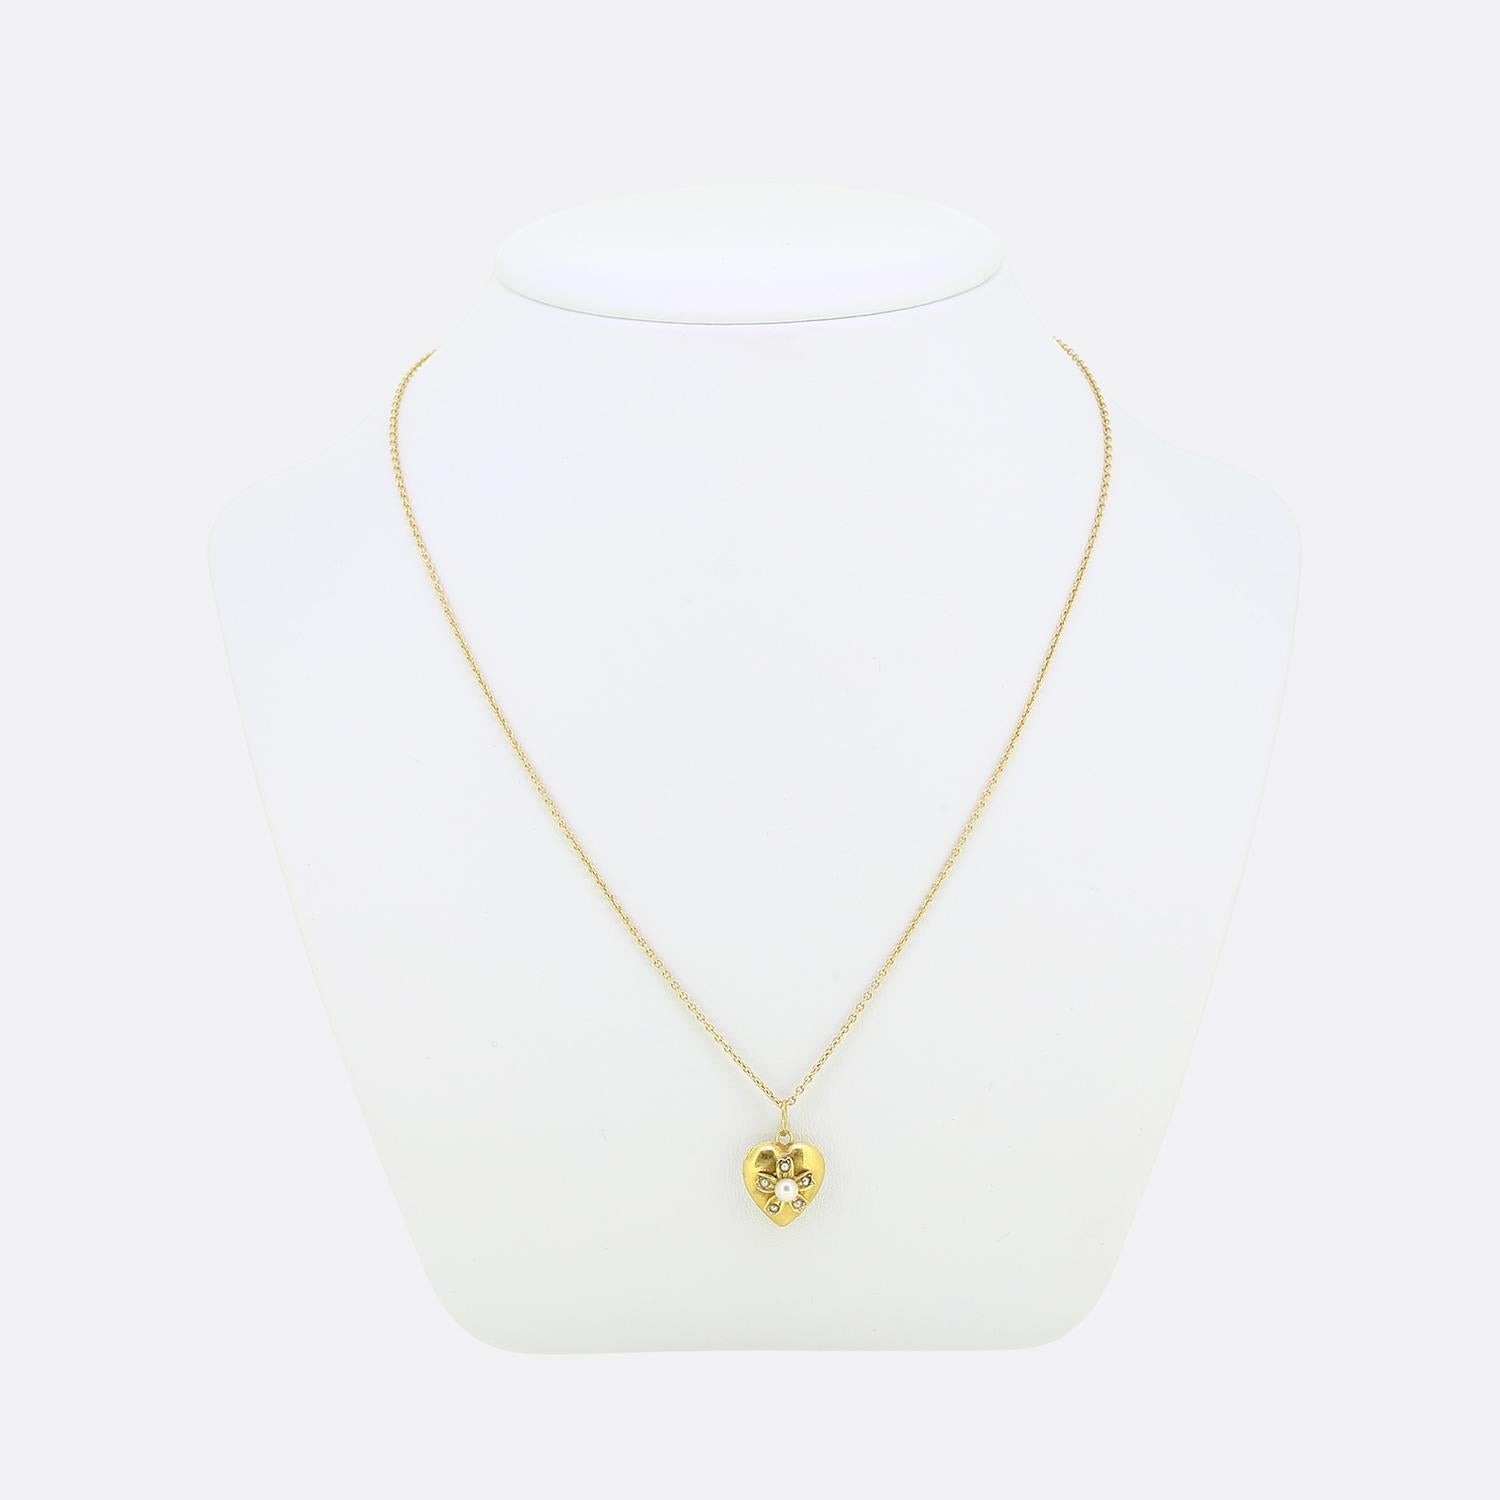 Nous avons ici un magnifique collier à pendentifs en perles. Ce pendentif antique a été réalisé en or jaune 18ct en forme de petit cœur d'amour et serti d'une perle naturelle de forme ronde au centre. Cette pierre focale est ensuite entourée de cinq